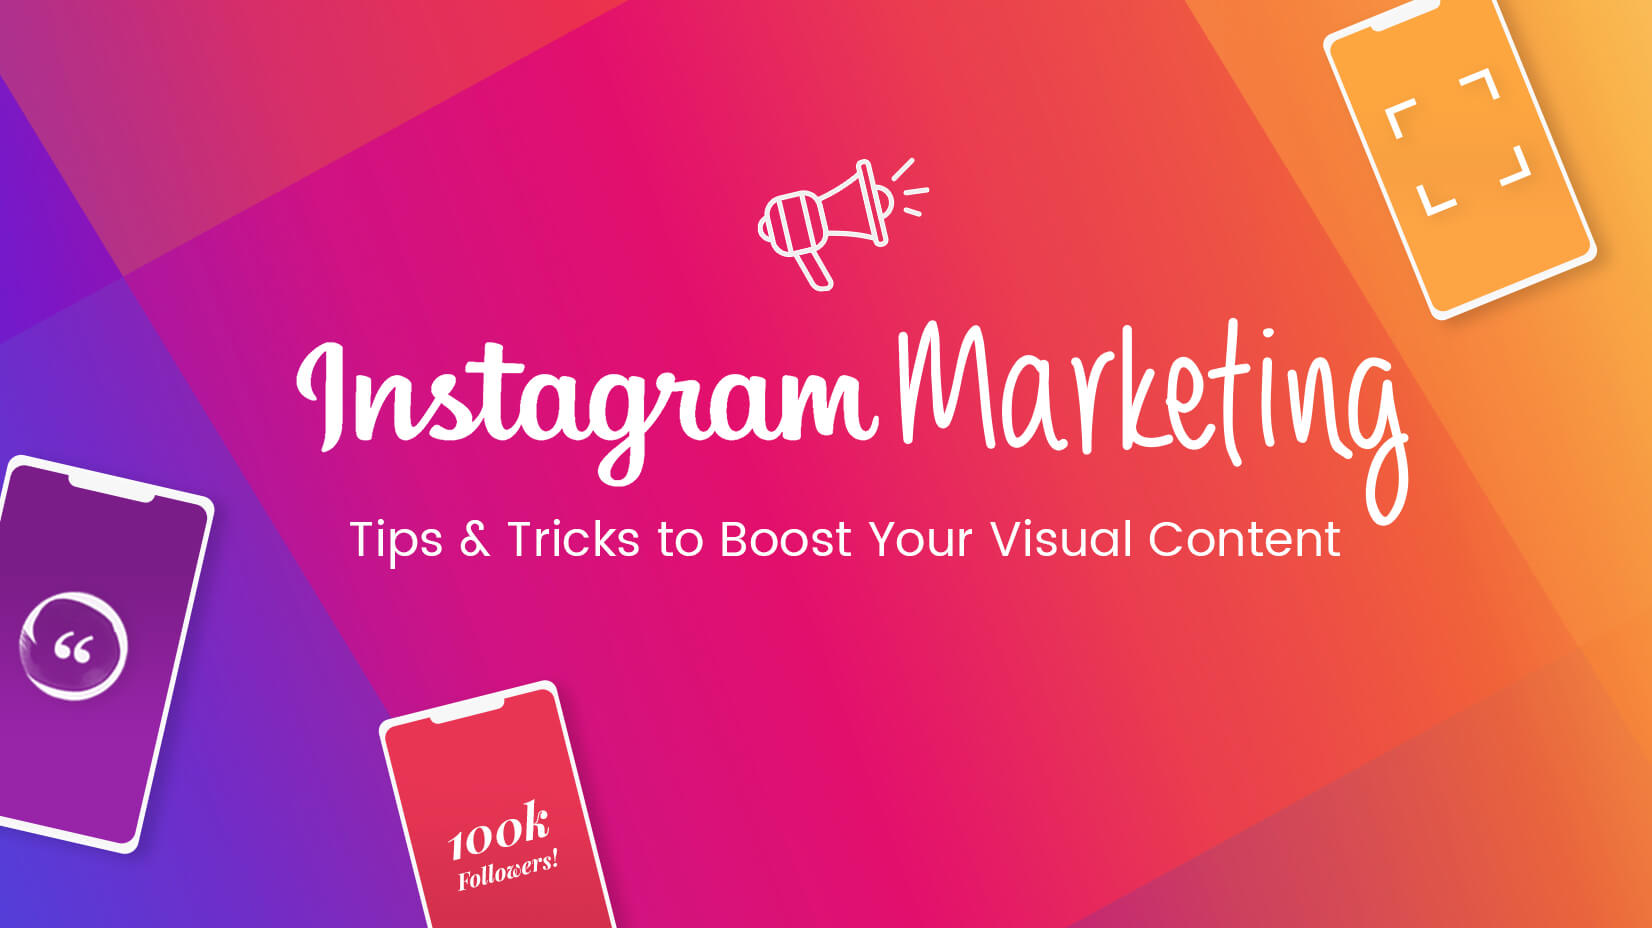 Chiến lược marketing xây dựng hình ảnh thương hiệu nổi bật bằng Instagram - Nguồn: Internet